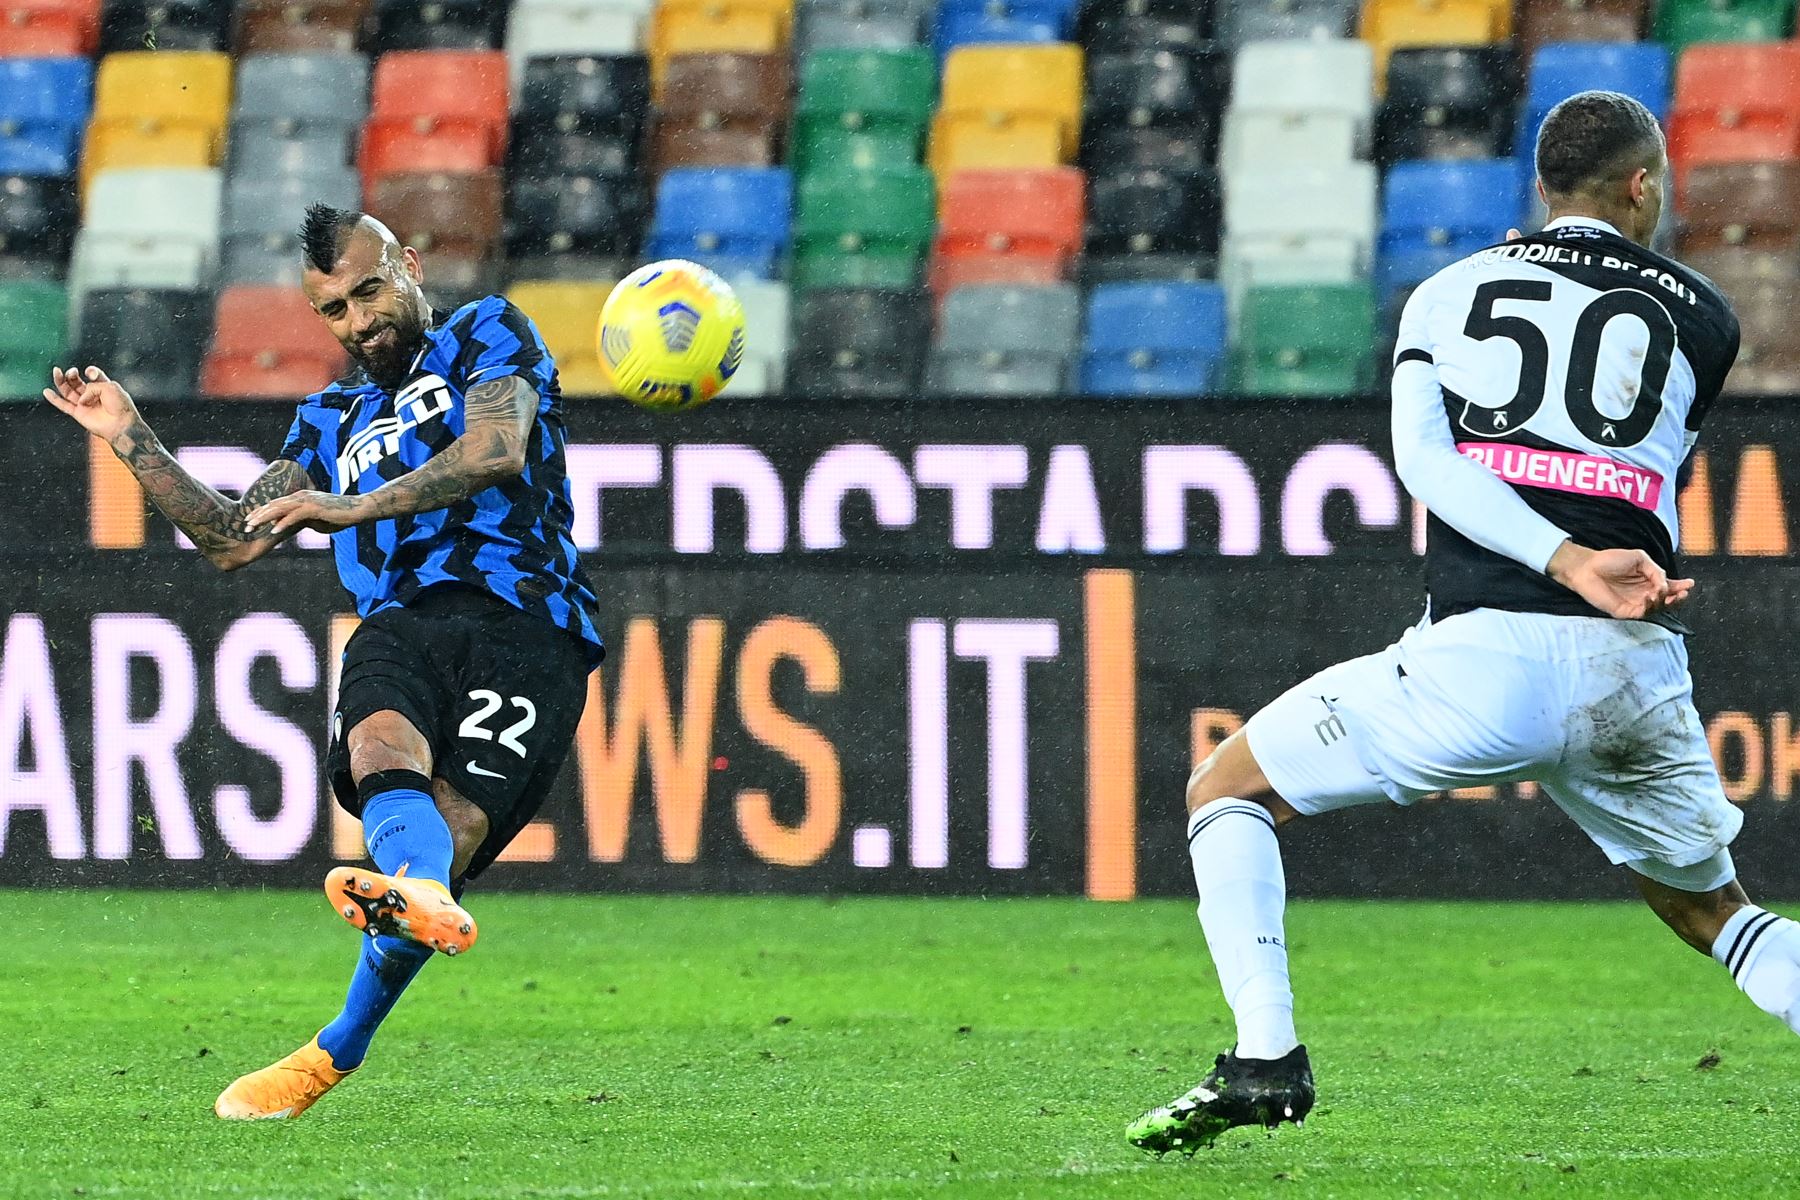 El centrocampista chileno del Inter de Milán Arturo Vidal  dispara a gol pasado el defensor brasileño del Udinese Rodrigo durante el partido de fútbol de la Serie A italiana Udinese vs Inter de Milán.
Foto: AFP